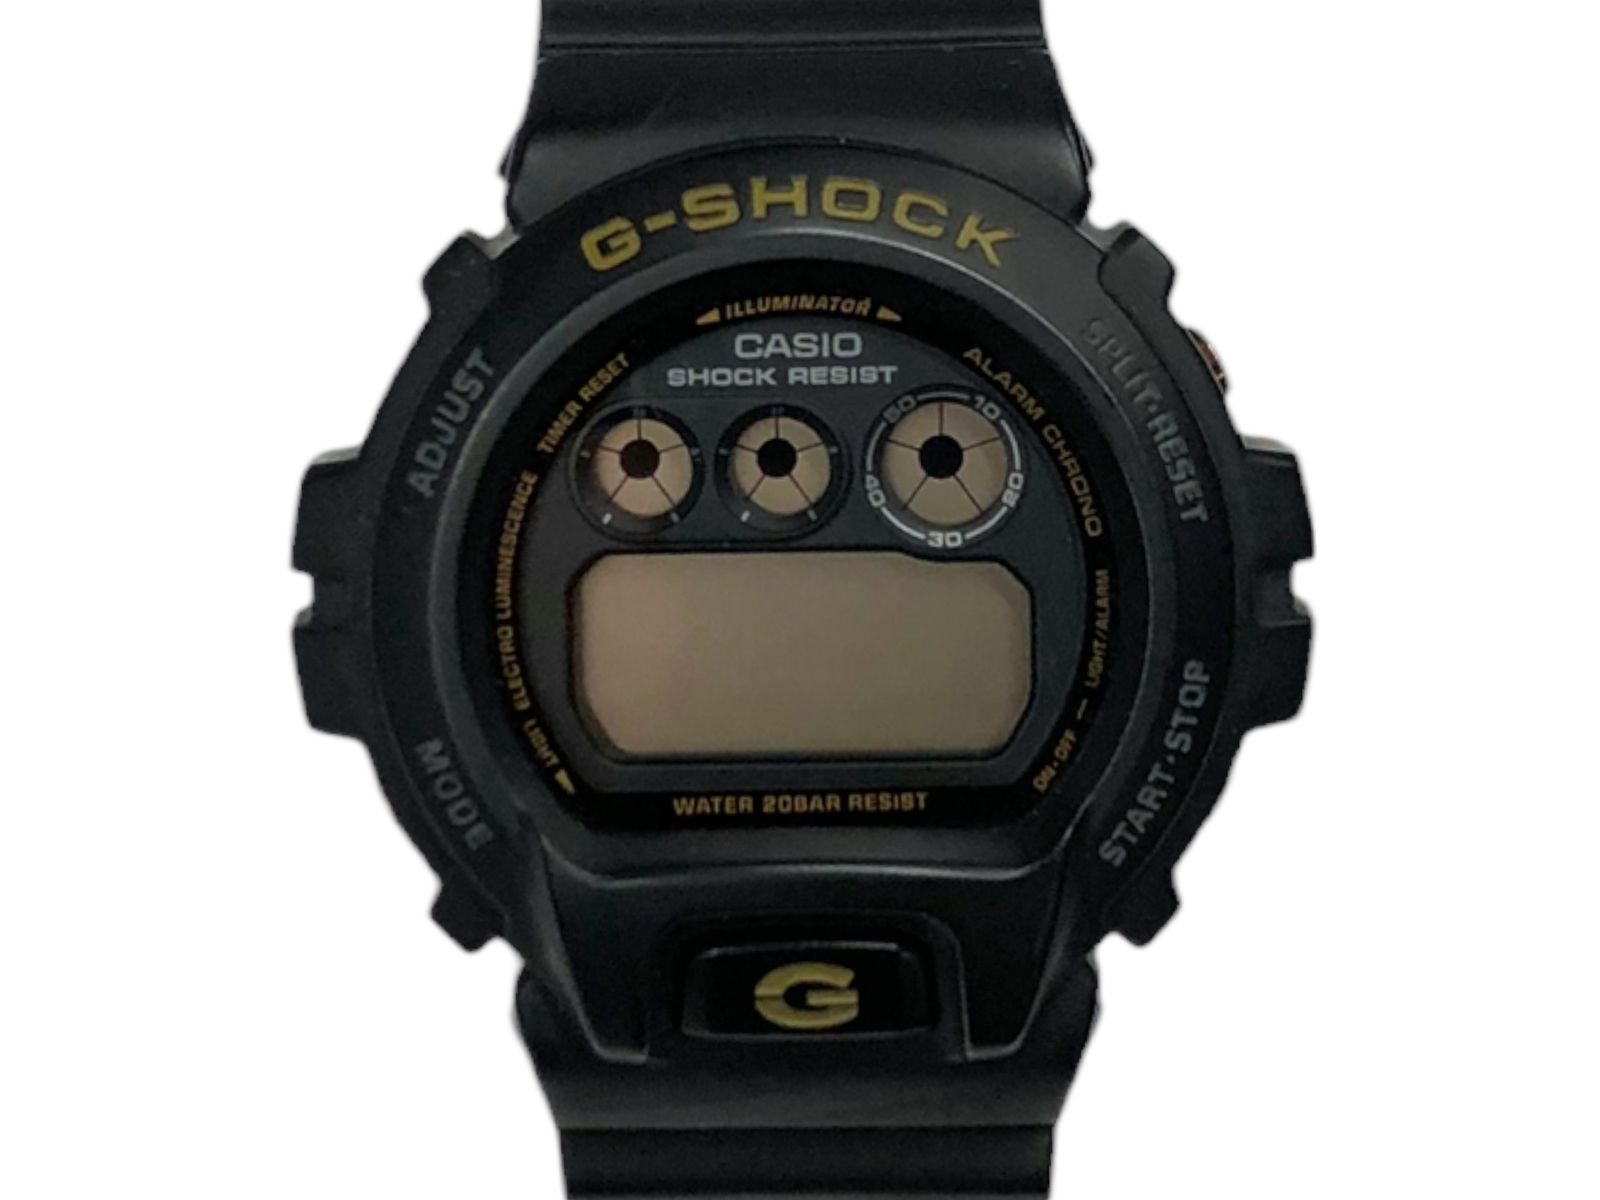 G-SHOCK 時計 ブラック - 腕時計(デジタル)